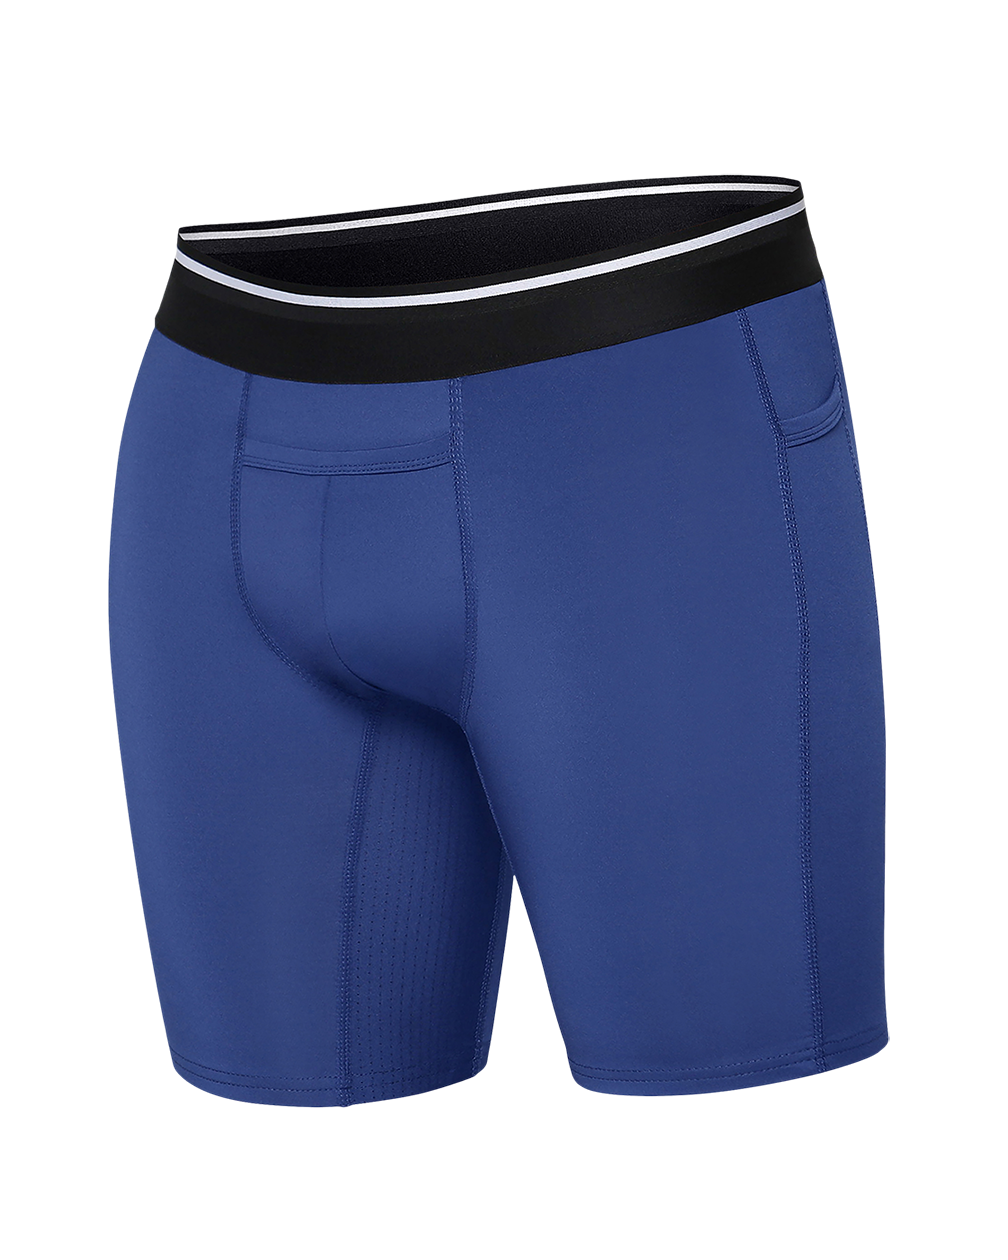 Soccer Compression Shorts, Slider Shorts, Spandex Shorts, adidas Compression  Shorts, Soccer Undershorts